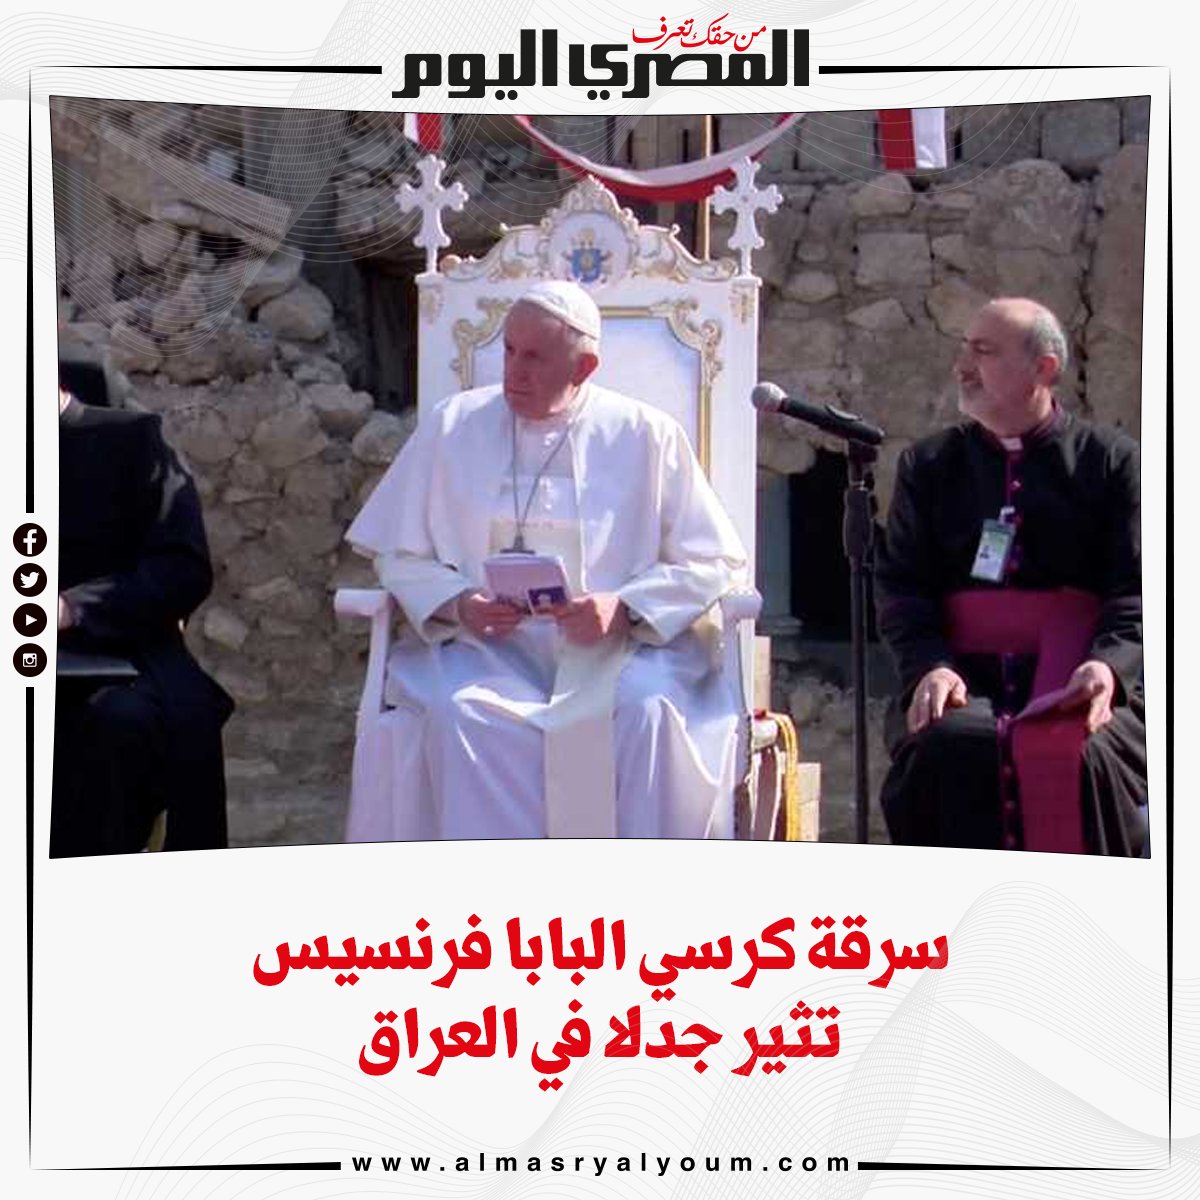 سرقة كرسي البابا فرنسيس تثير جدلا في العراق